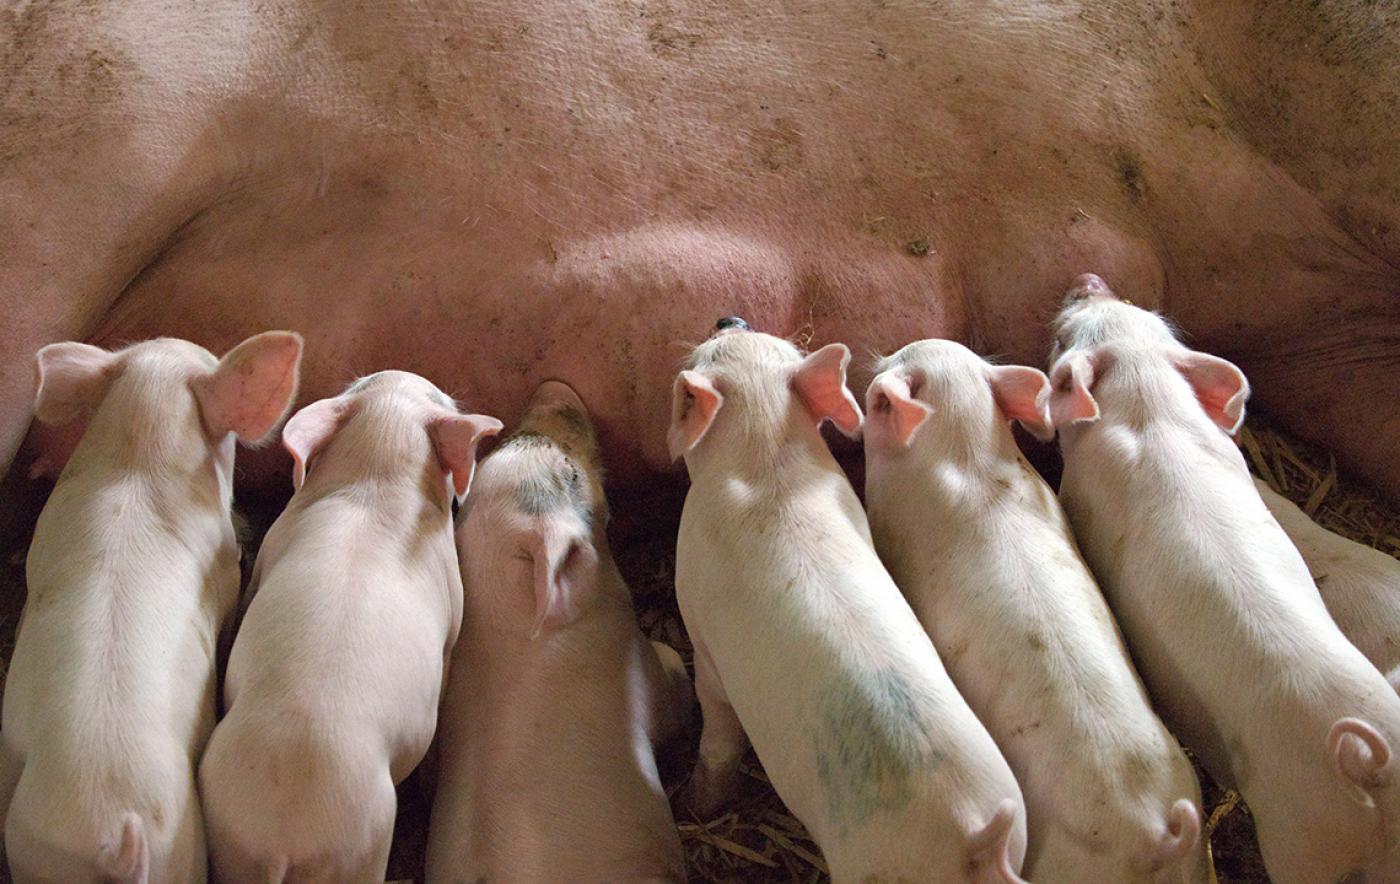 Bauernverband und Interessengemeinschaft der Schweinhalter informieren zur geplanten Tierwohlförderung für Schweine